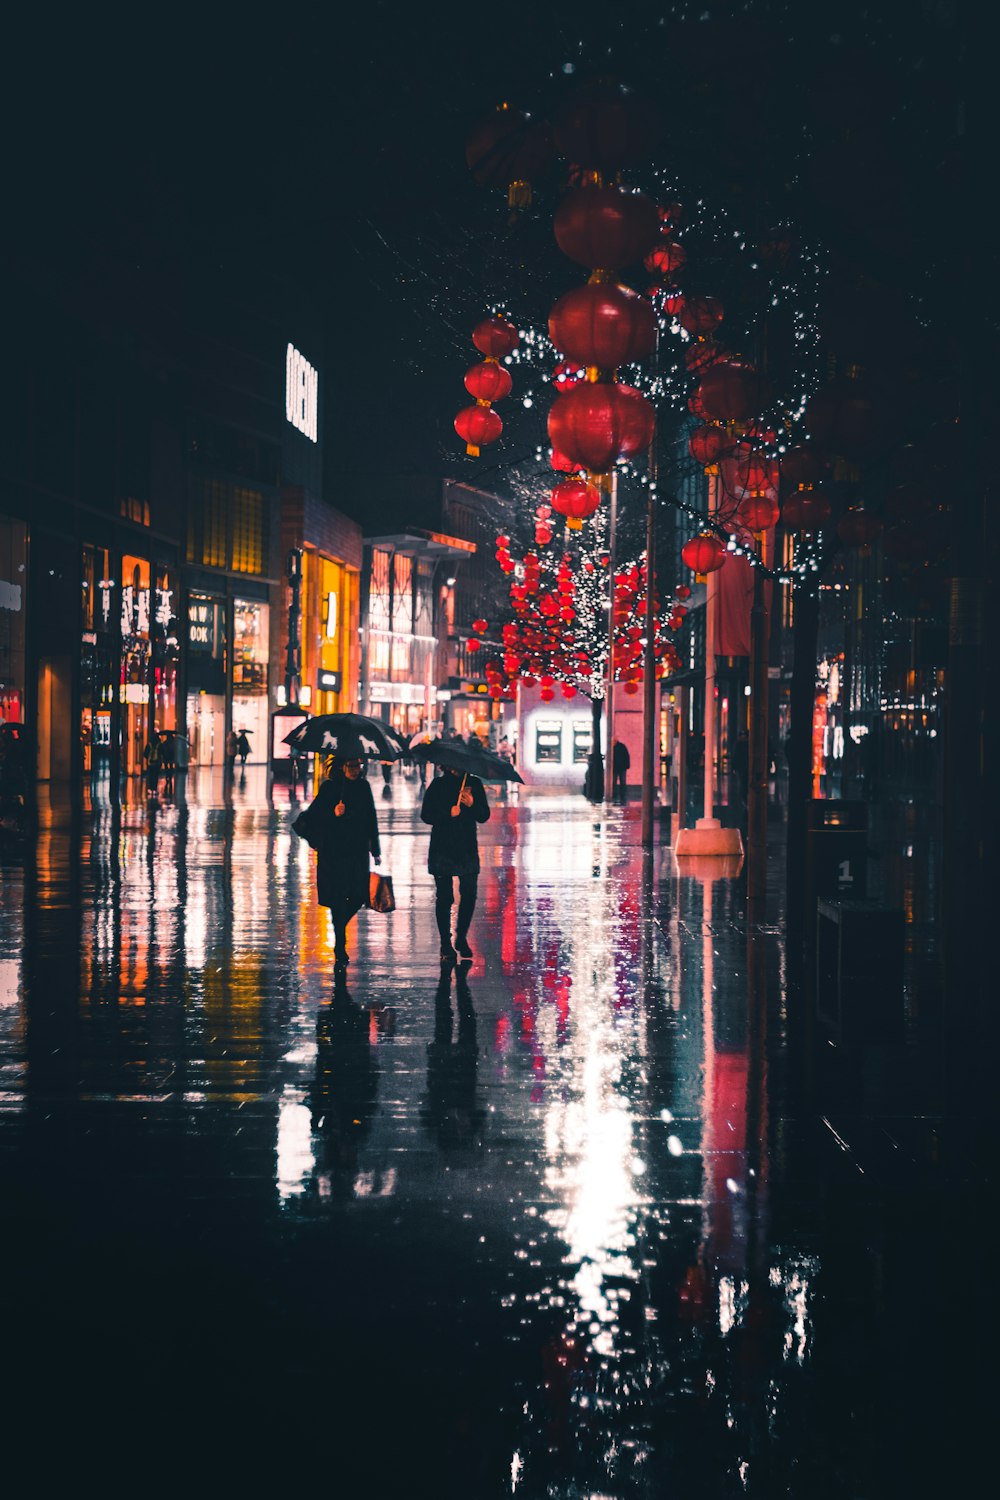 Menschen, die nachts mit einem Regenschirm spazieren gehen